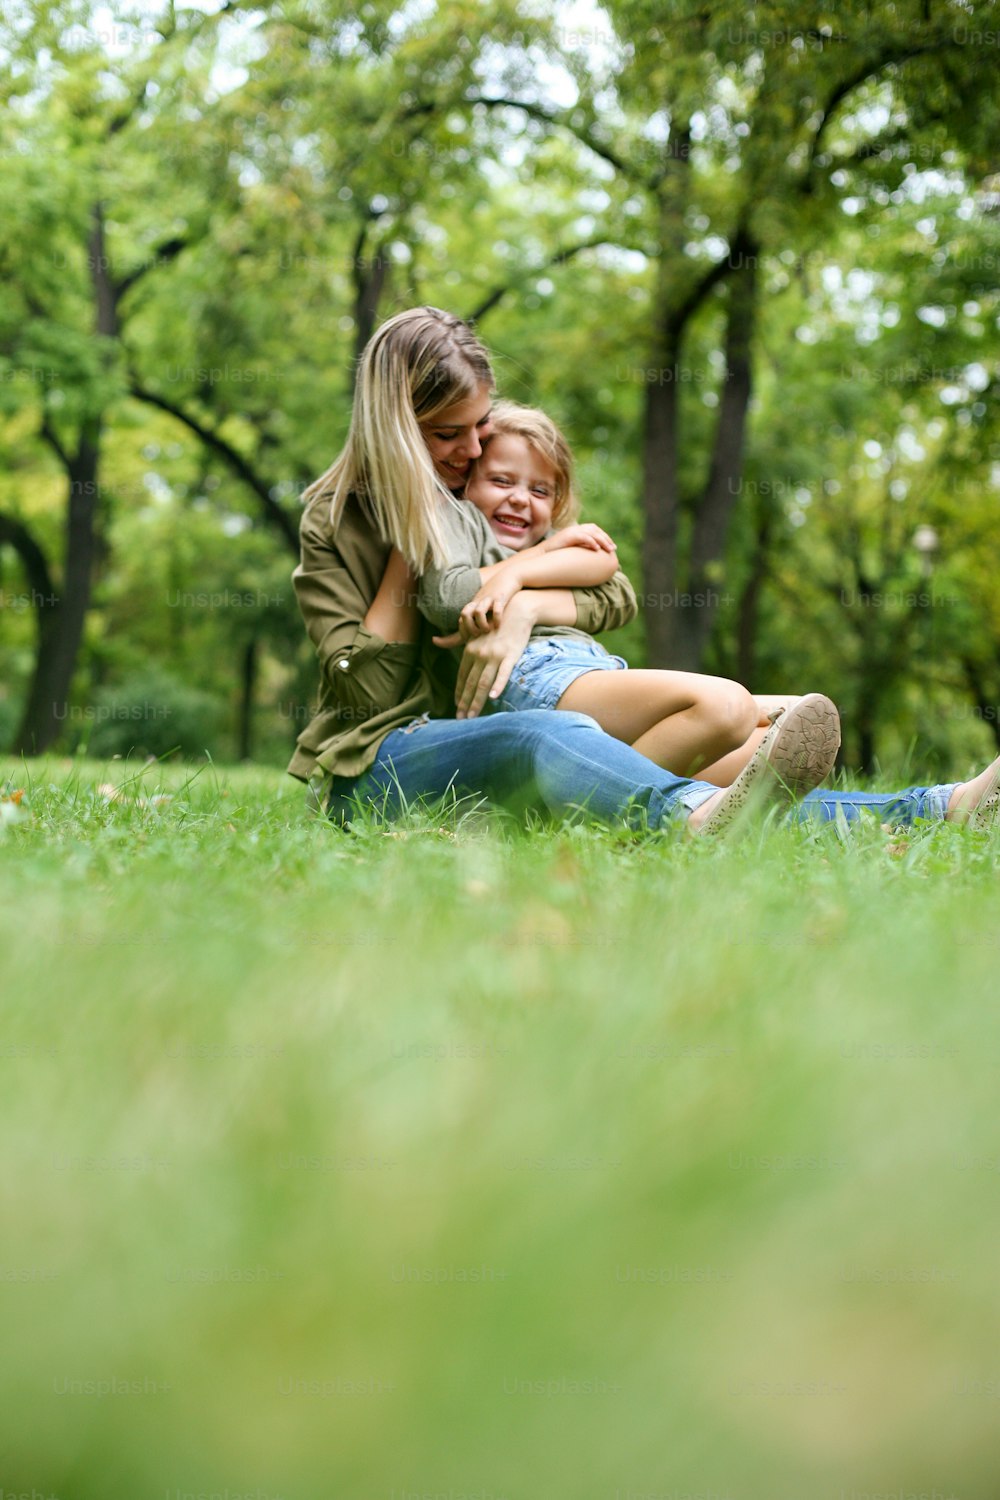 Bambina seduta sul grembo della madre. Madre allegra con sua figlia seduta nell'erba. Spazio per la copia.